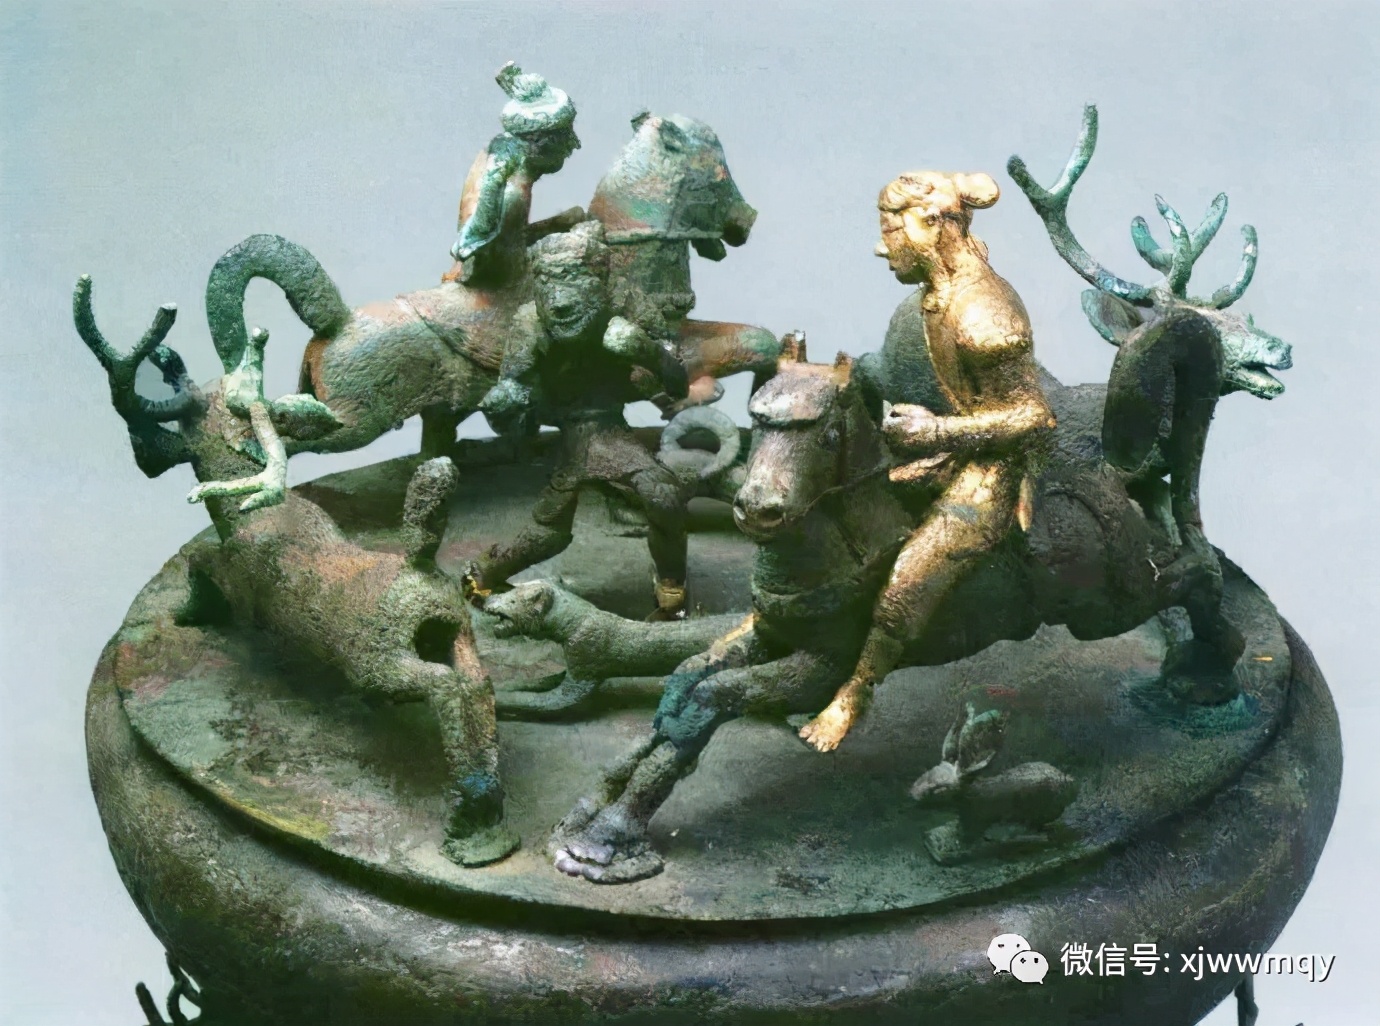 古滇国青铜鼓上的骑马"金人"雕塑,赤着双脚,正在征战或者狩猎中,年代